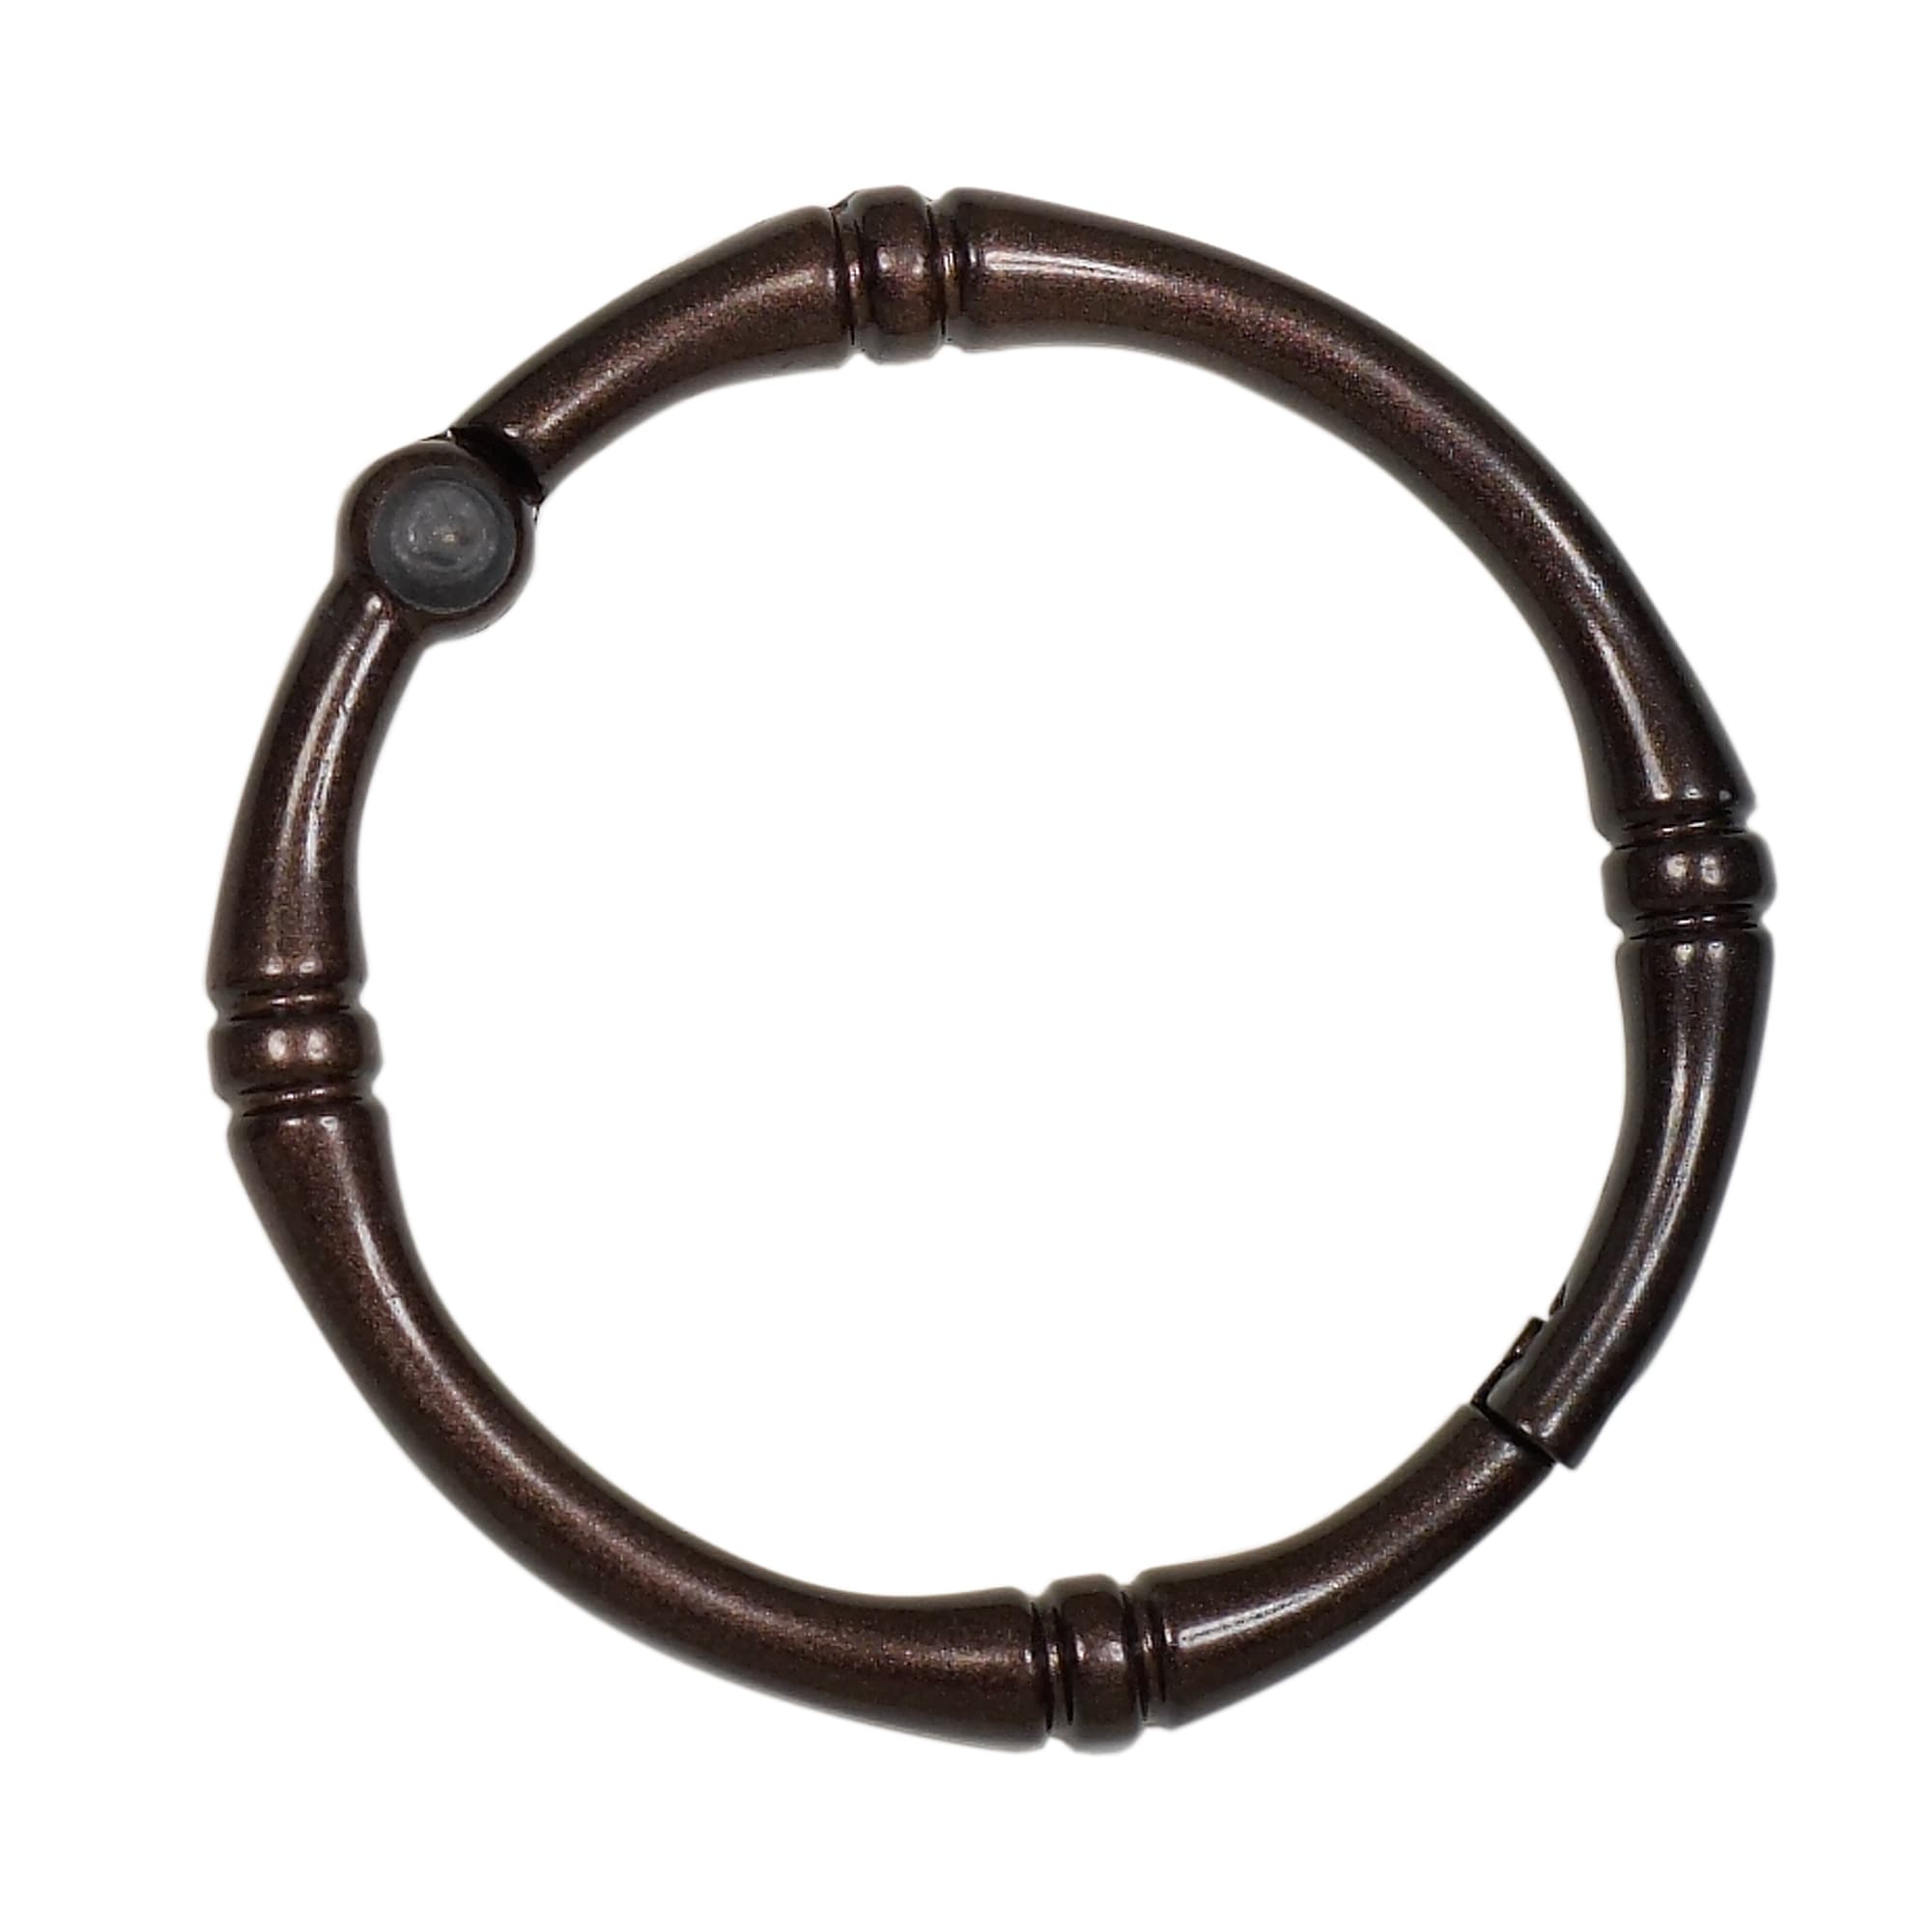 Vintage Faux Leather 3-Ring Binder 1.75 Spine Black